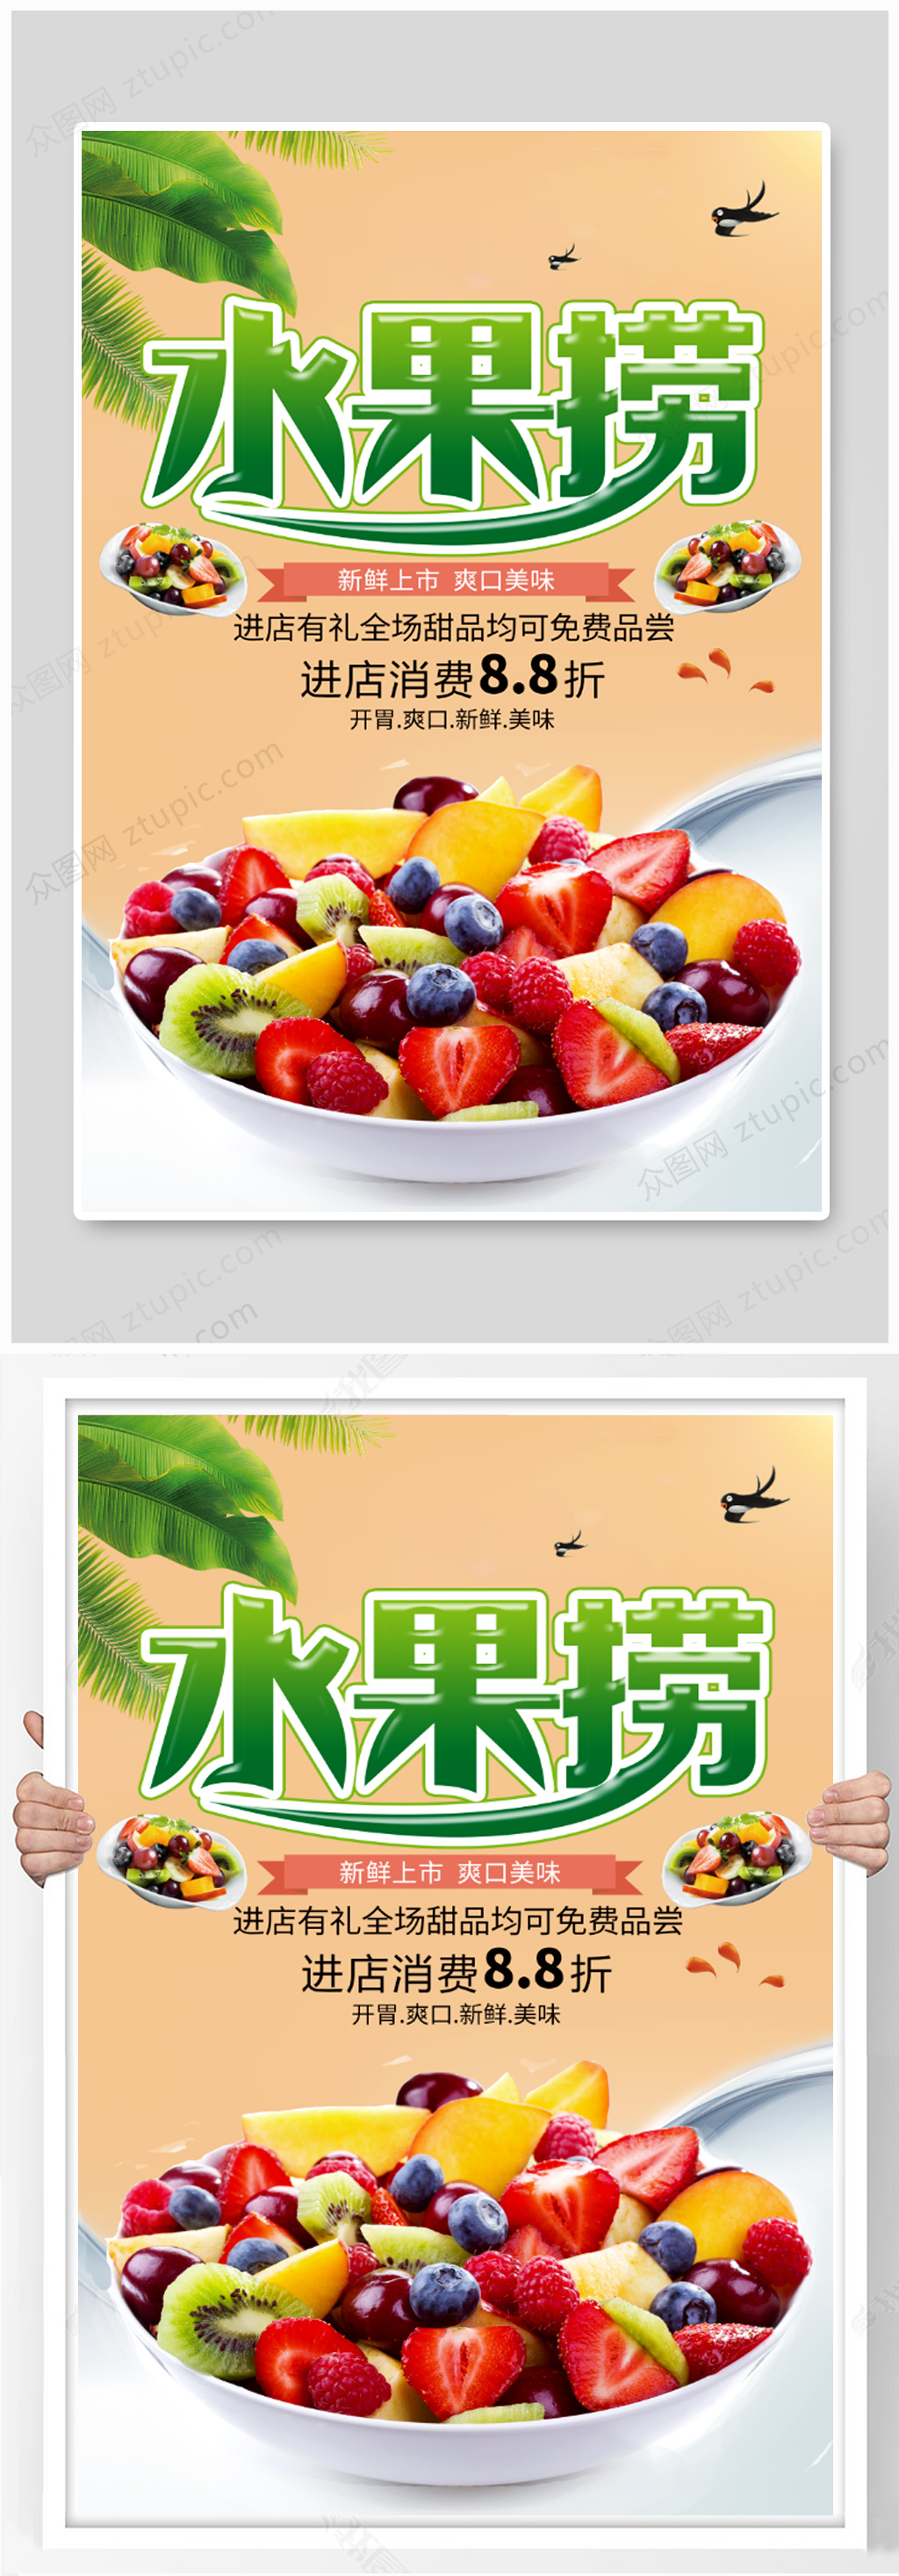 水果捞宣传语图片